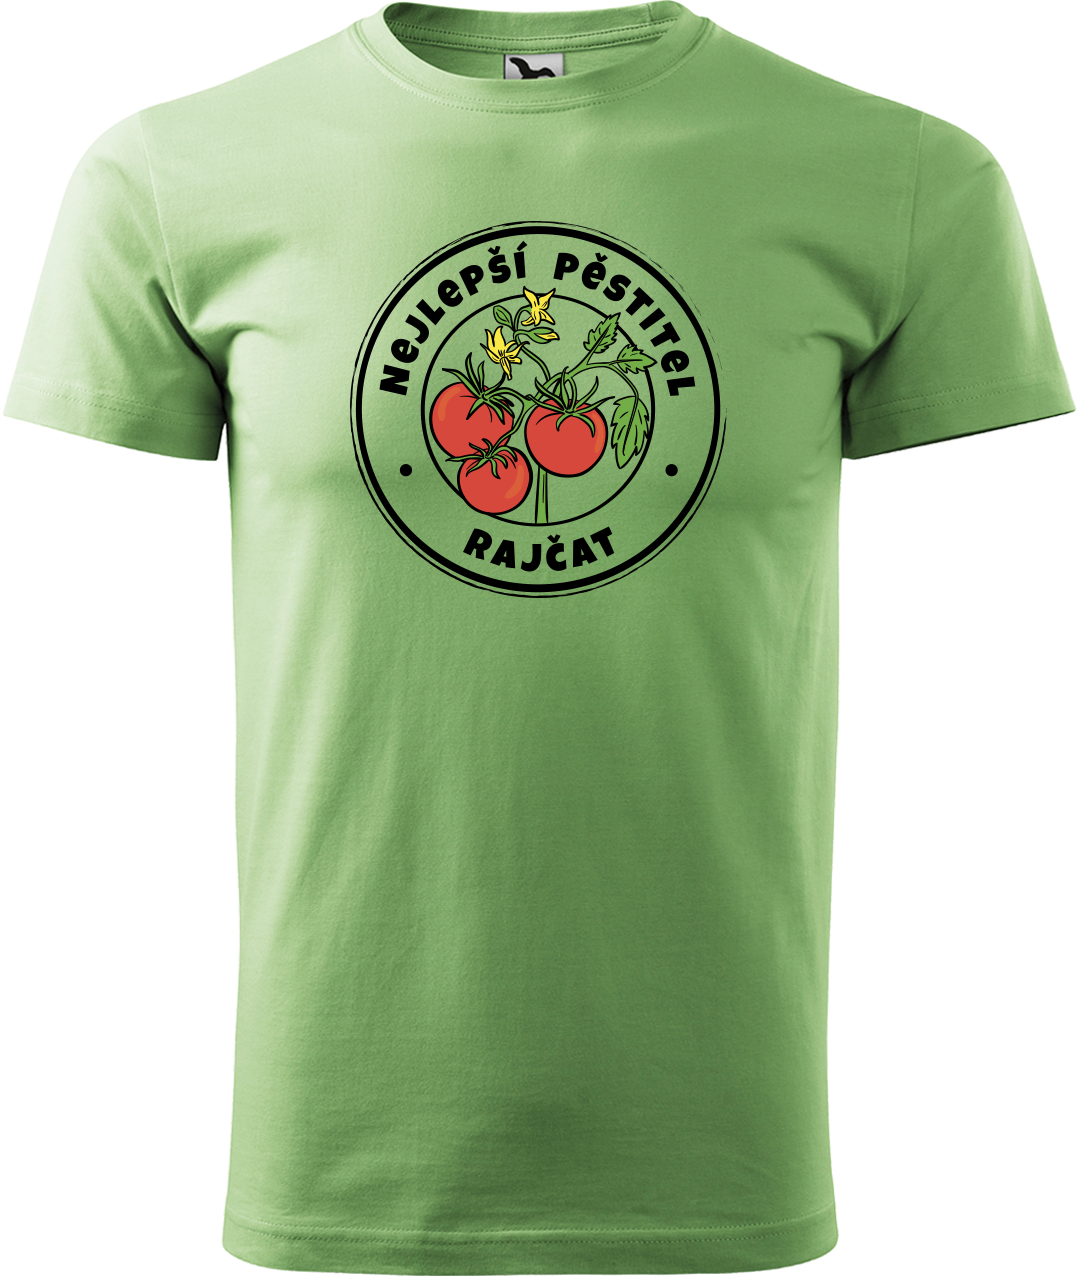 Tričko pro zahradníka - Nejlepší pěstitel rajčat Velikost: XL, Barva: Trávově zelená (39)